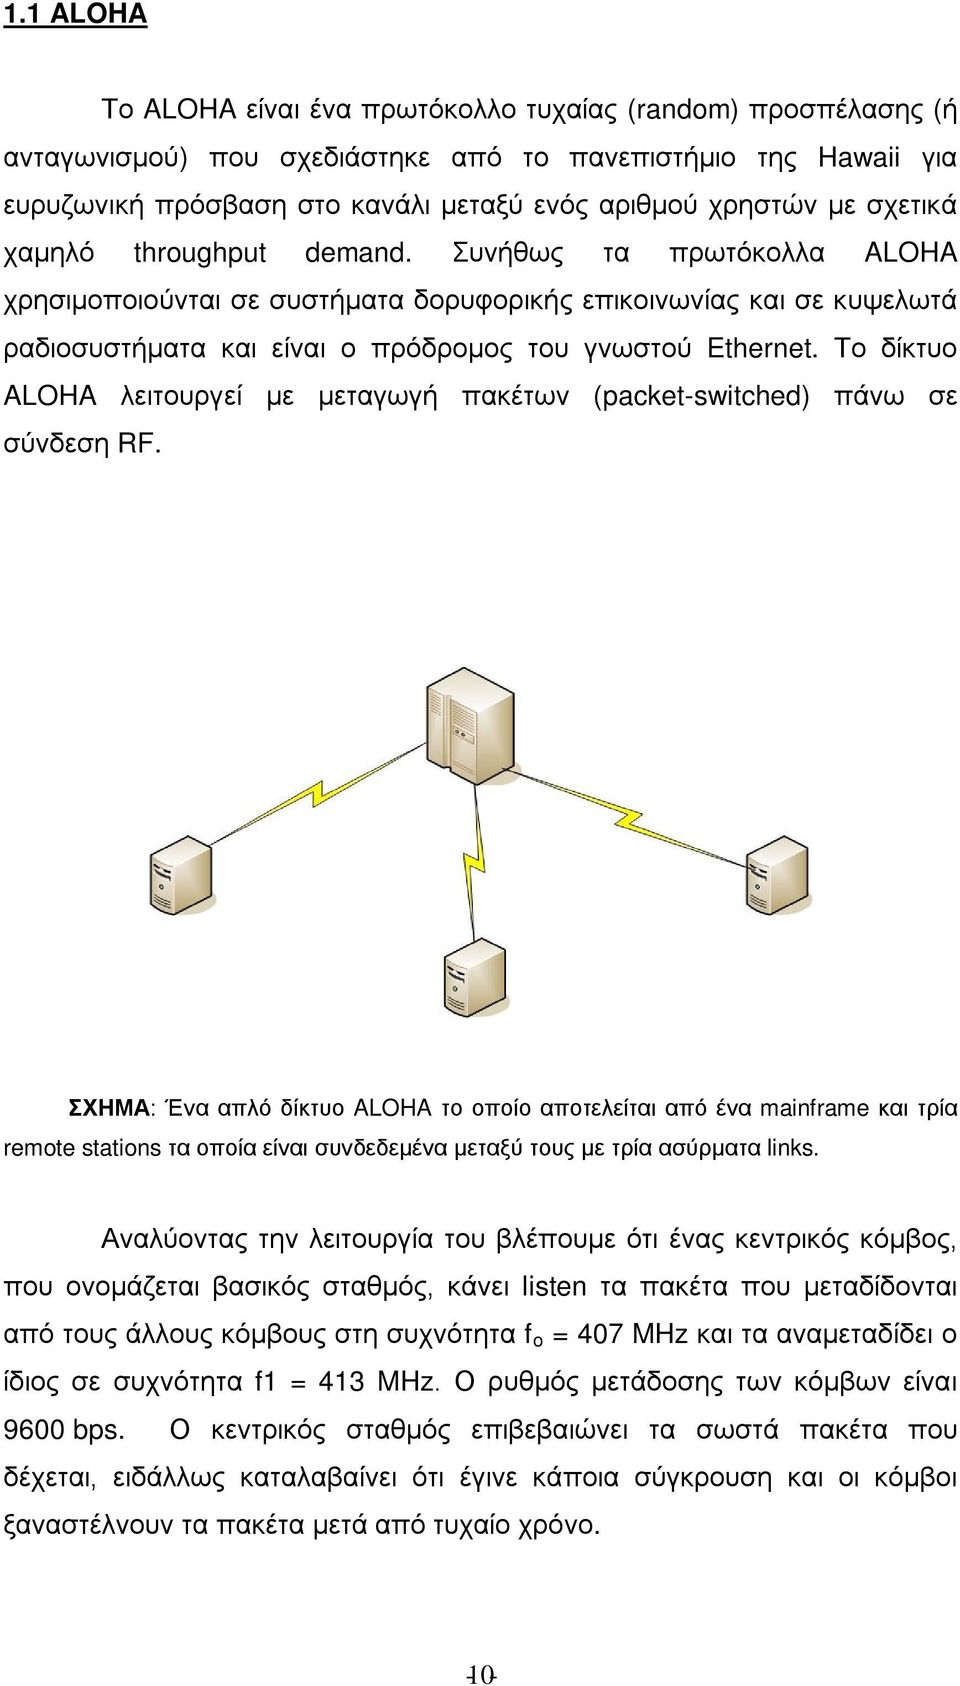 Το δίκτυο ALOHA λειτουργεί με μεταγωγή πακέτων (packet-switched) πάνω σε σύνδεση RF.